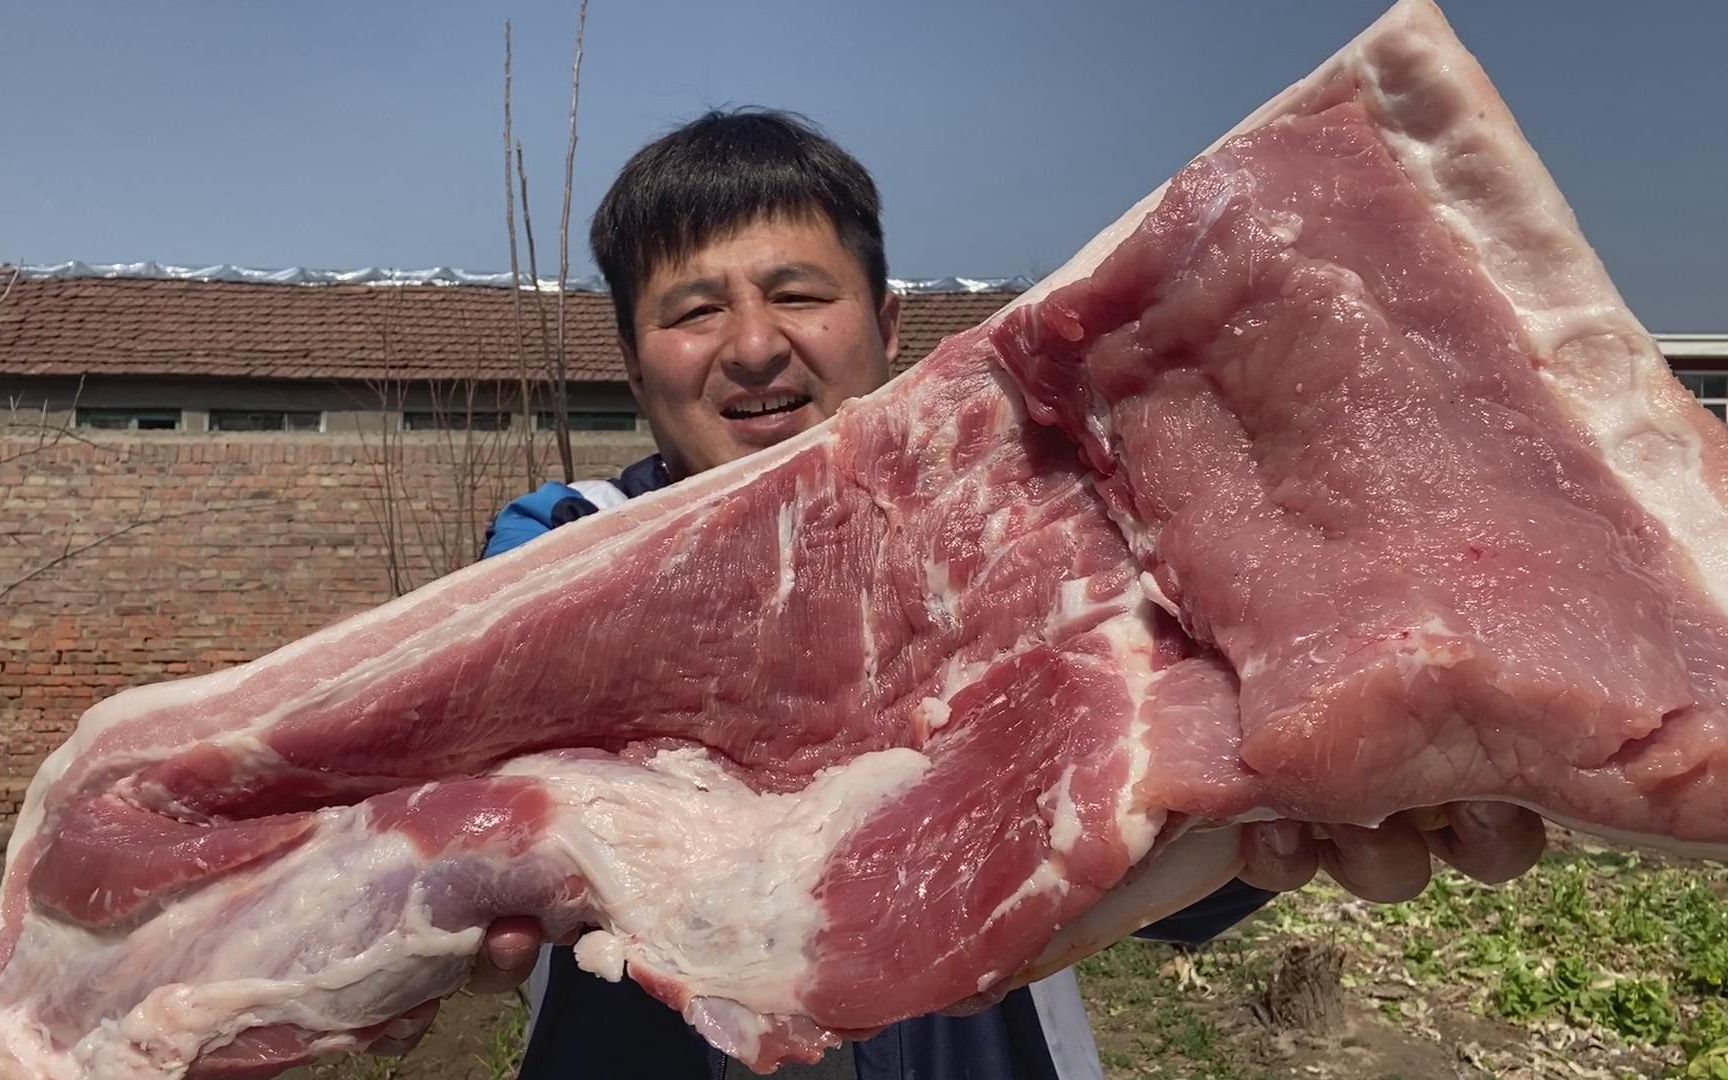 十斤猪肉 实物图片